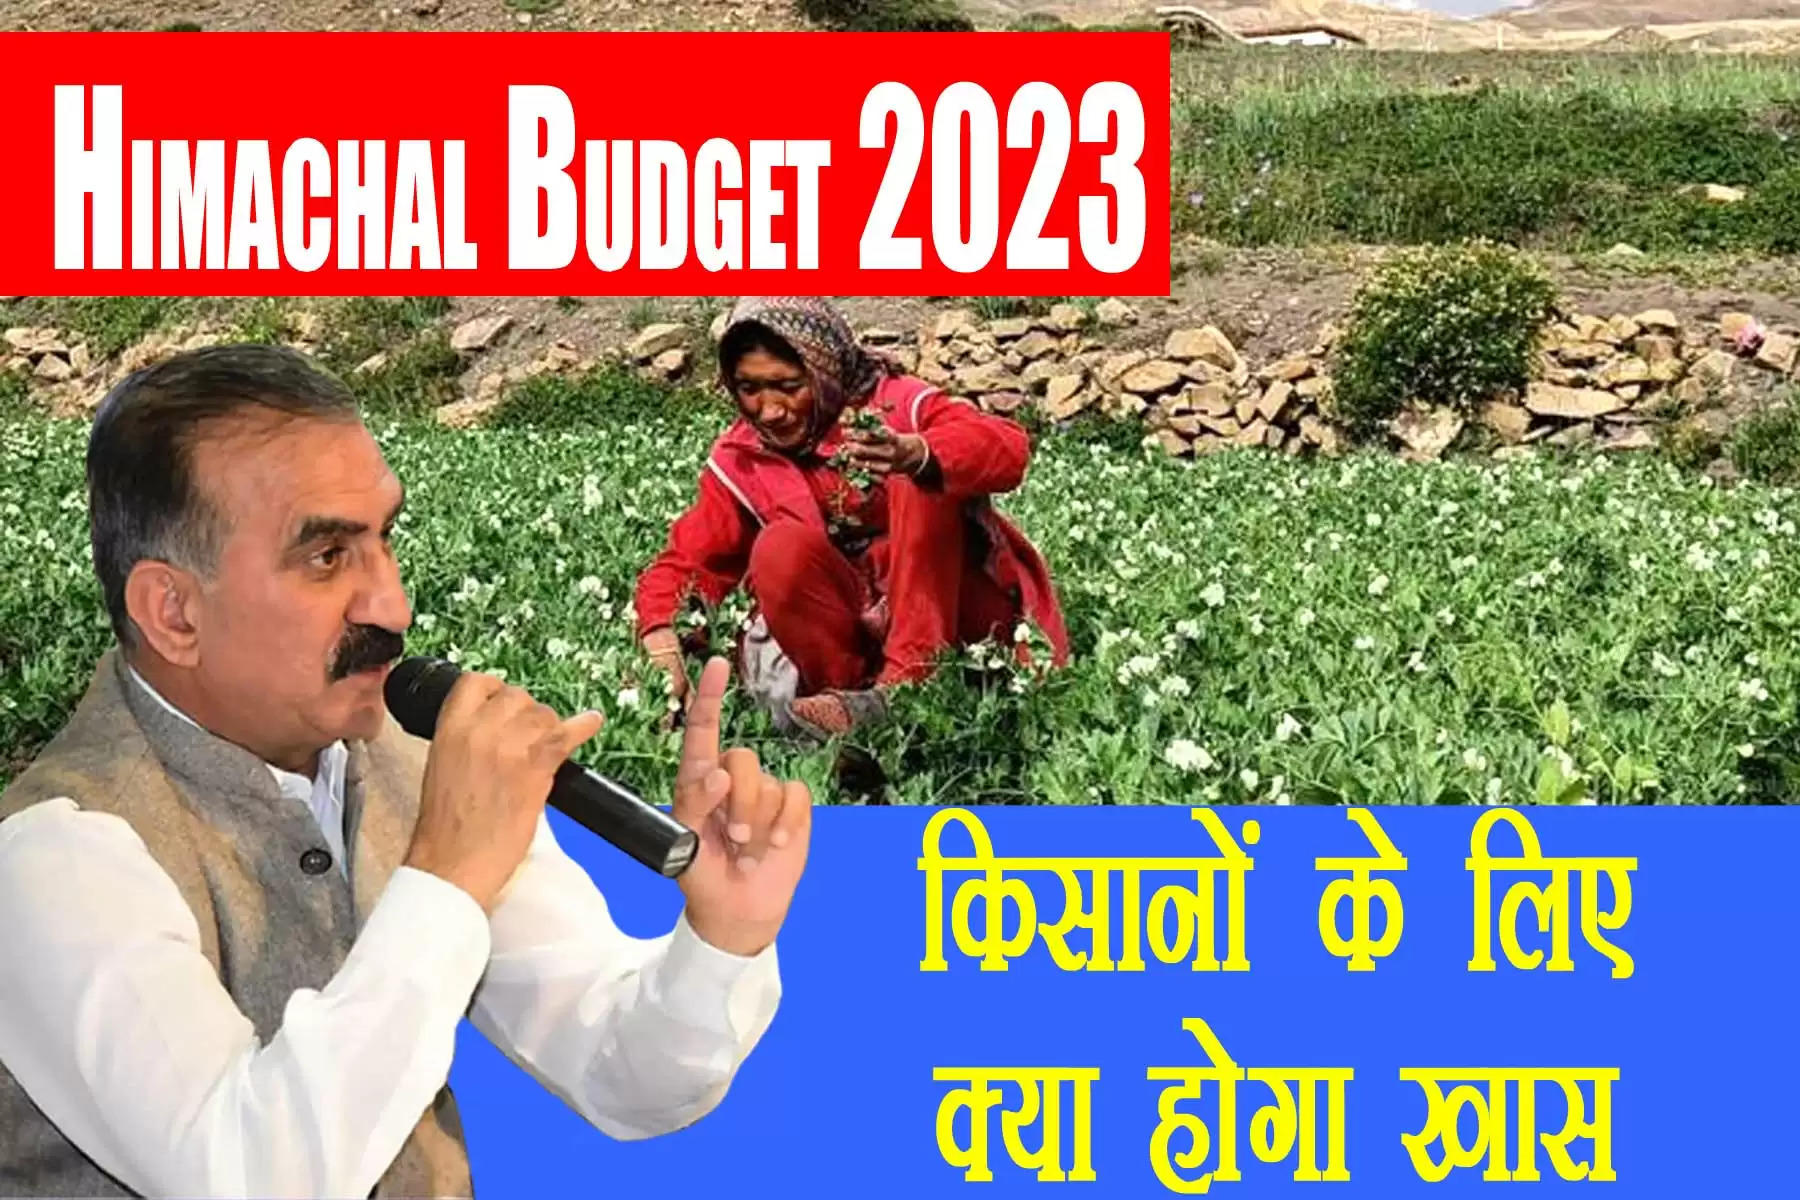  हिमाचल प्रदेश की सुक्खू सरकार का पहला बजट (Himachal pradesh budget 2023) सत्र आज से शुरू हो गया है। बजट सत्र (Himachal pradesh budget session 2023-24) से पहले प्रदेश सरकार ने 15 फरवरी तक लोगों से बजट में किन-किन योजनाओं को शामिल किया जाए, इसके सुझाव मांगे थे। प्रदेश की जनता ने ई-मेल और पत्र के जरिए सरकार को बजट के लिए सुझाव भी दे दिए हैं। प्रदेश की नई सरकार के पहले बजट से प्रदेश के किसानों को भी खासी उम्मीदें हैं।